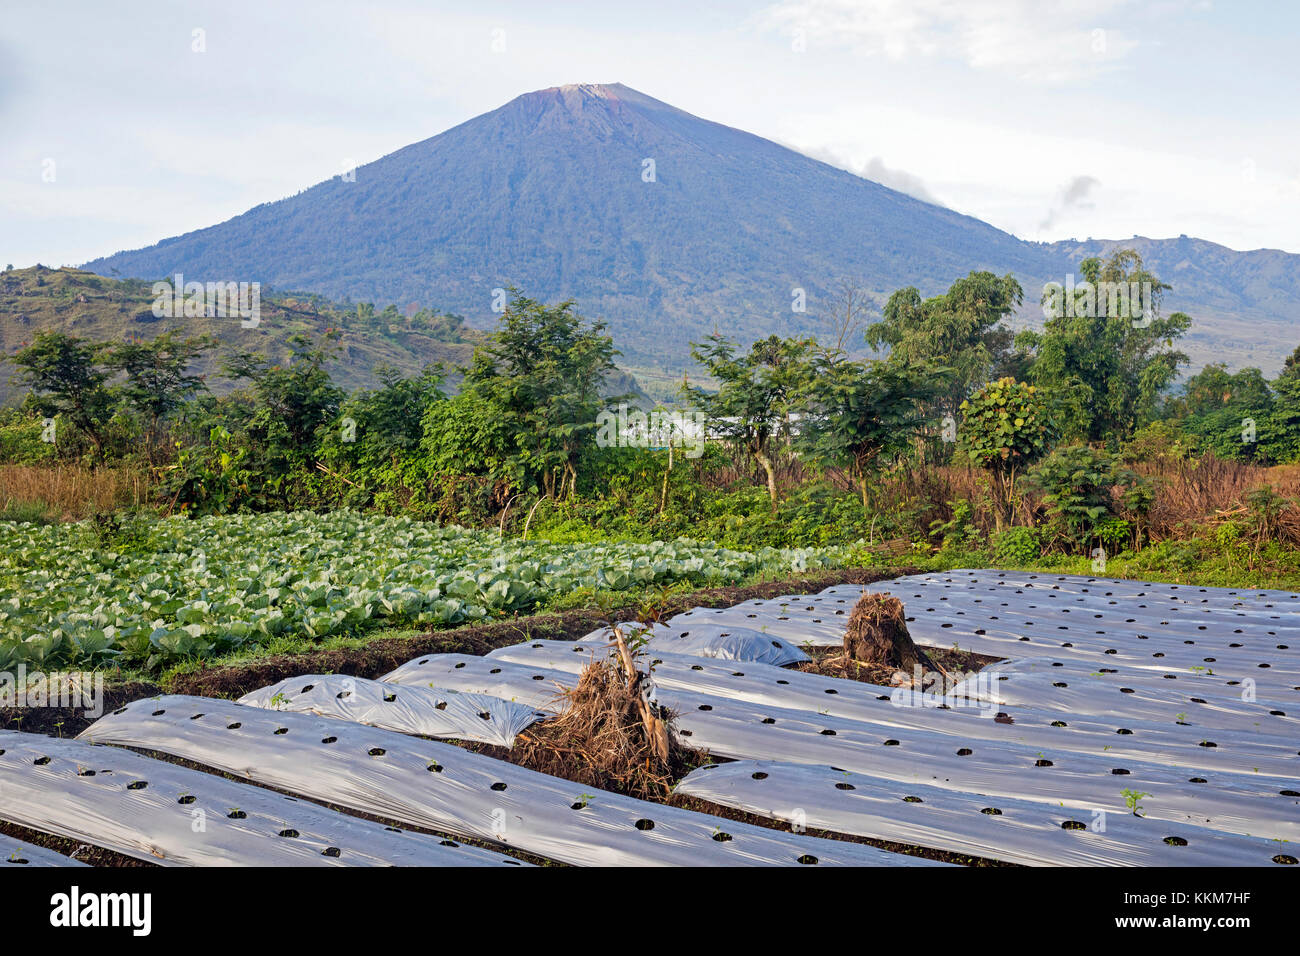 Mount rinjani / gunung rinjani, vulcano attivo e un campo crescente di verdure a Sembalun Lawang, West Nusa Tenggara sull'Isola di Lombok, INDONESIA Foto Stock